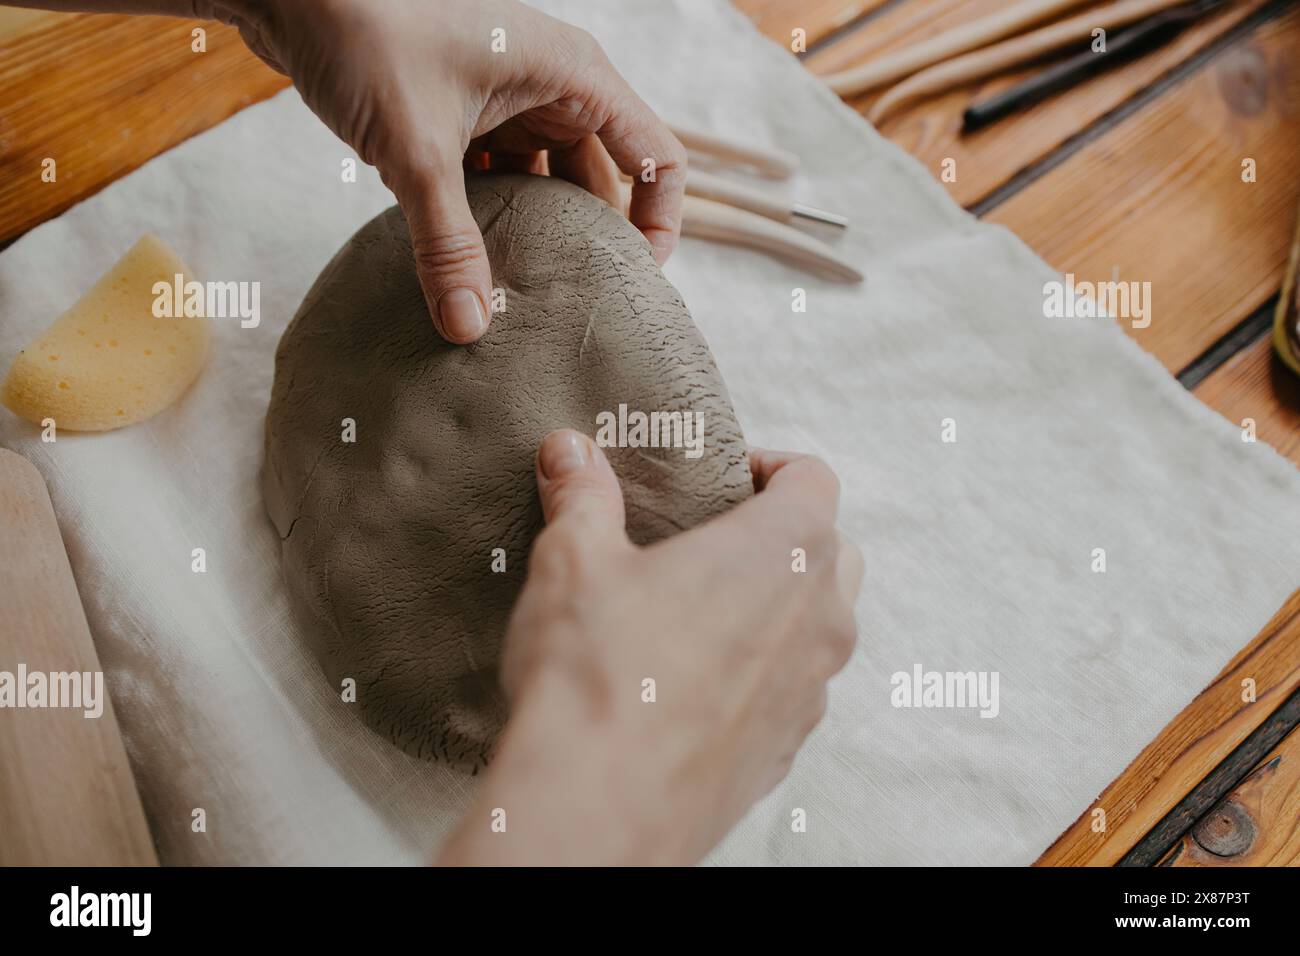 Mains de femme façonnant de l'argile sur tissu blanc Banque D'Images